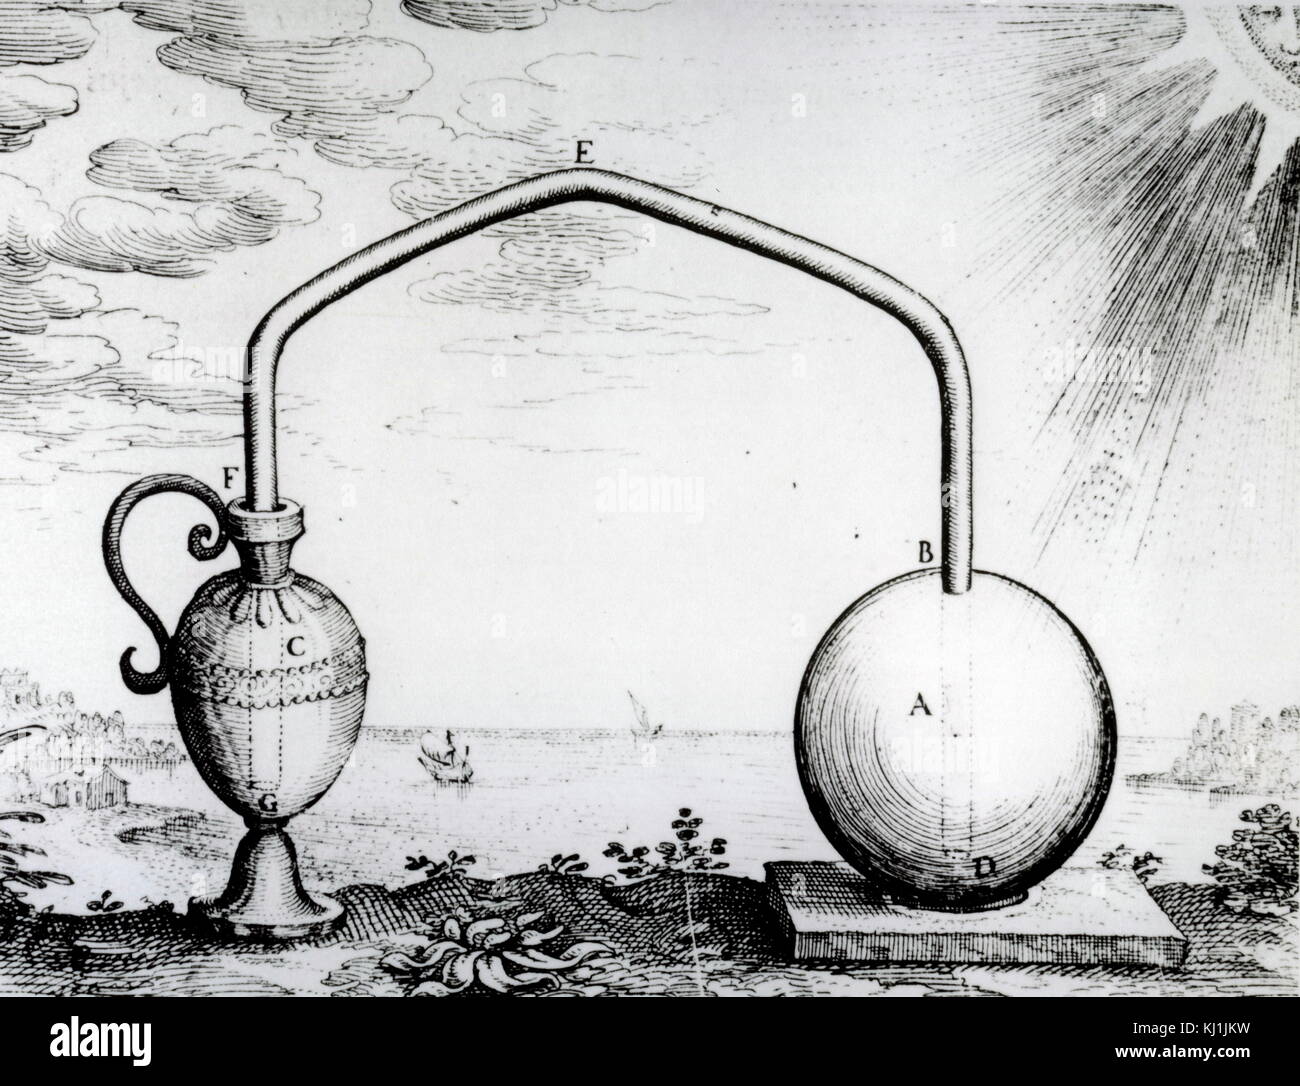 Gravur, ein Experiment, um die Ausdehnung der Luft in Form von Wärme durch Philo von Byzanz durchgeführt. Philo von Byzanz (280 v. Chr. - 220 v. Chr.), einen griechischen Ingenieur und Schriftsteller auf der Mechanik. Vom 17. Jahrhundert Stockfoto